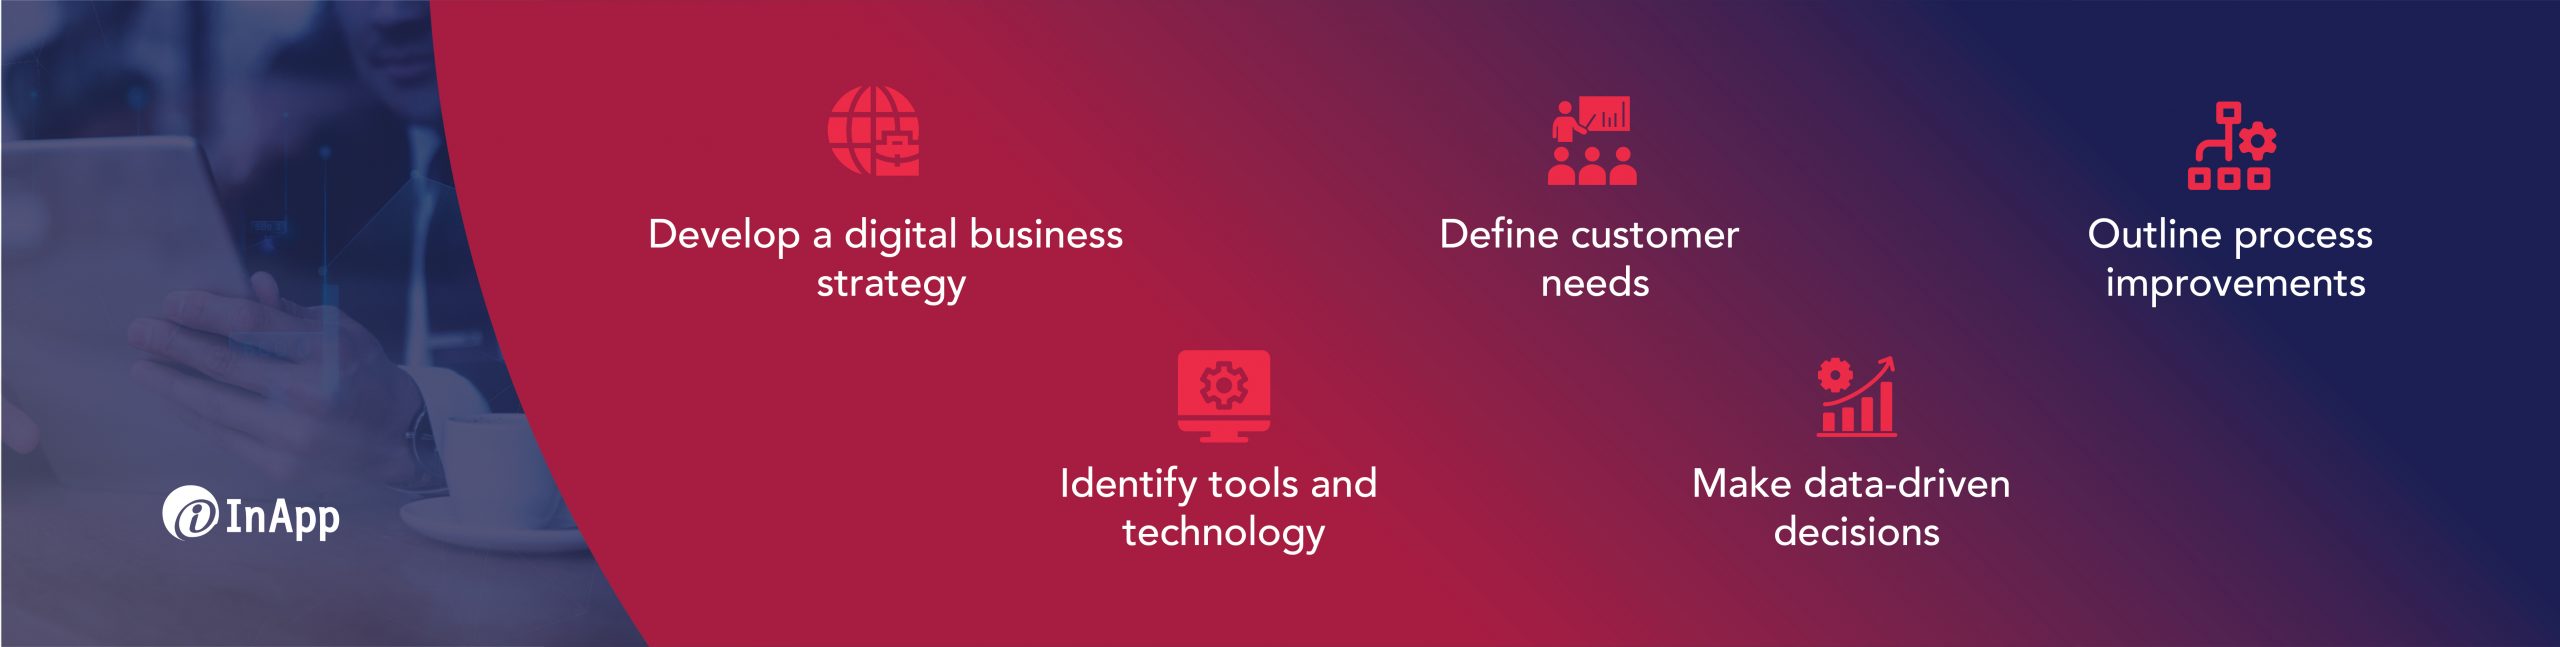 How do you digitally transform a business?